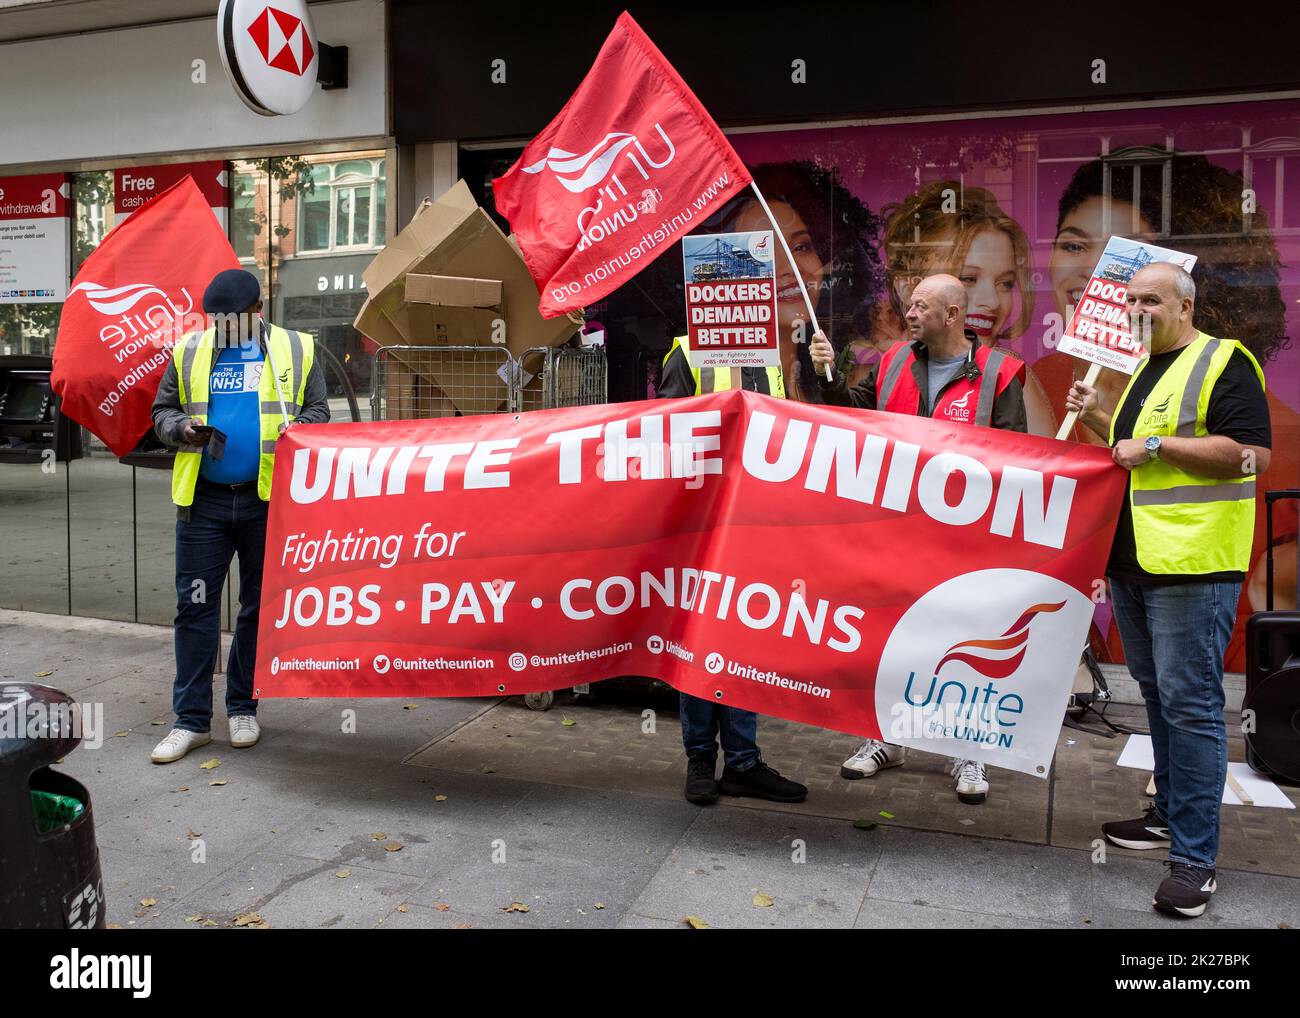 Felixstowe Dockers etapa de protesta en el centro de Londres, Unidad de la Unión, luchando por un aumento salarial y mejores condiciones. Inglaterra, Reino Unido, septiembre de 2022. Foto de stock